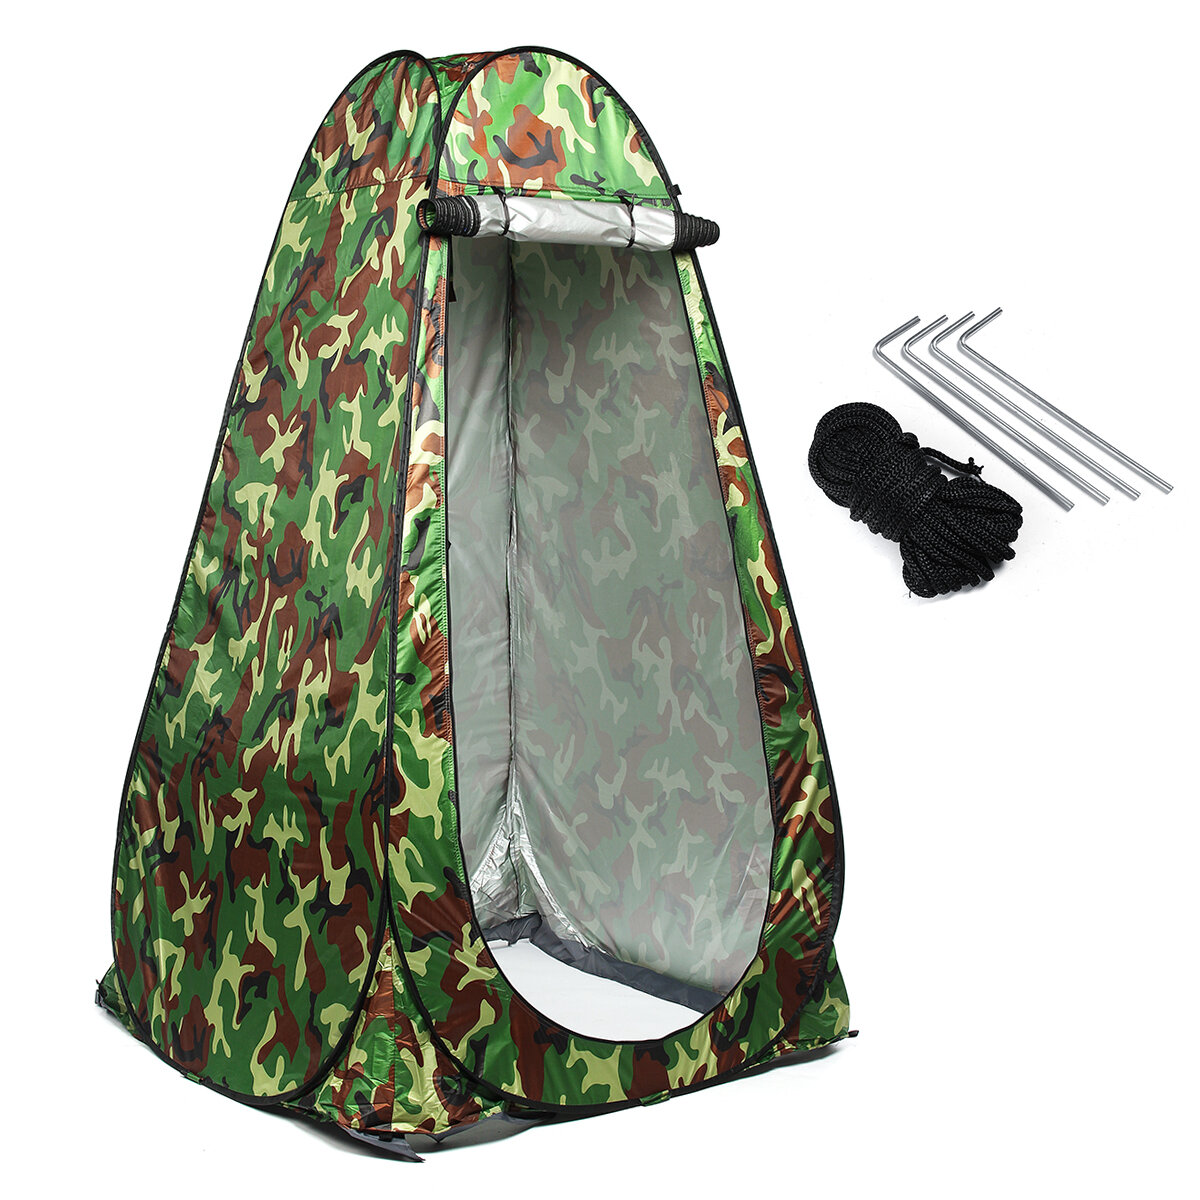 Tente de douche instantanée de 190 cm pour camping, toilette, vestiaire privé, imperméable, résistant aux UV, auvent de pêche.